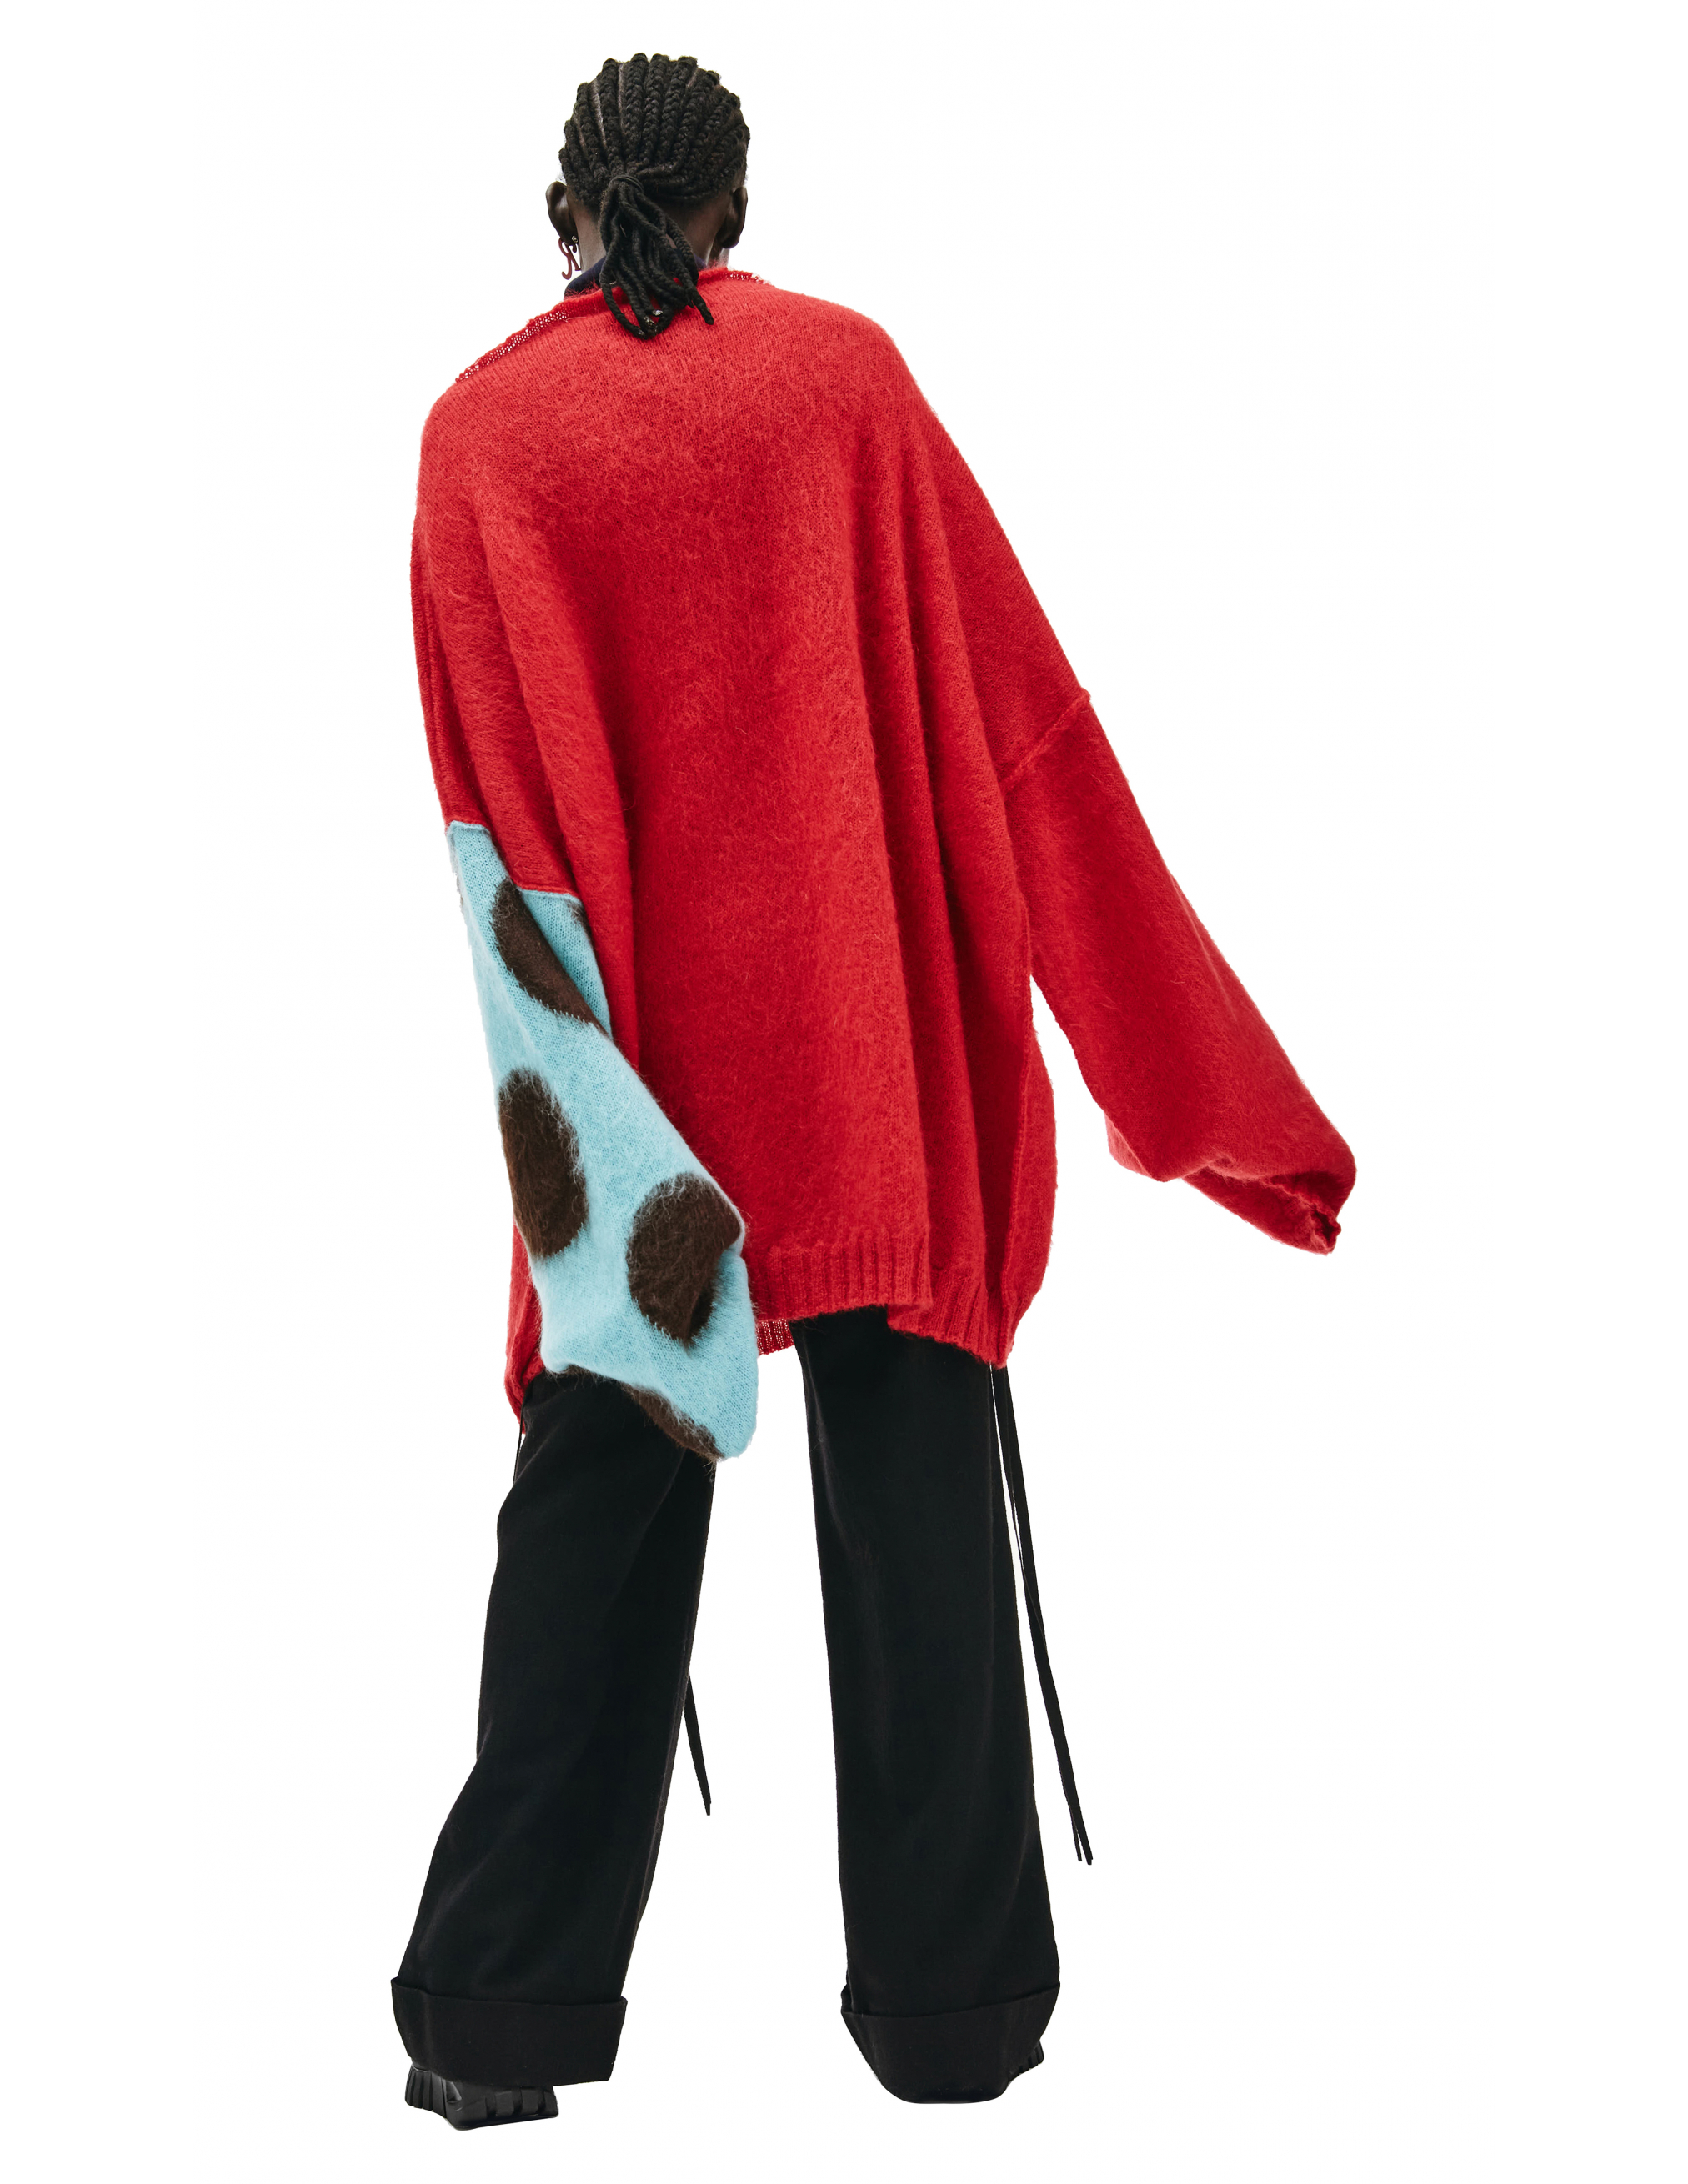 Красный Оверсайз свитер с контрастной вышивкой Raf Simons 212-820-50001-3042, размер 2;1 - фото 4